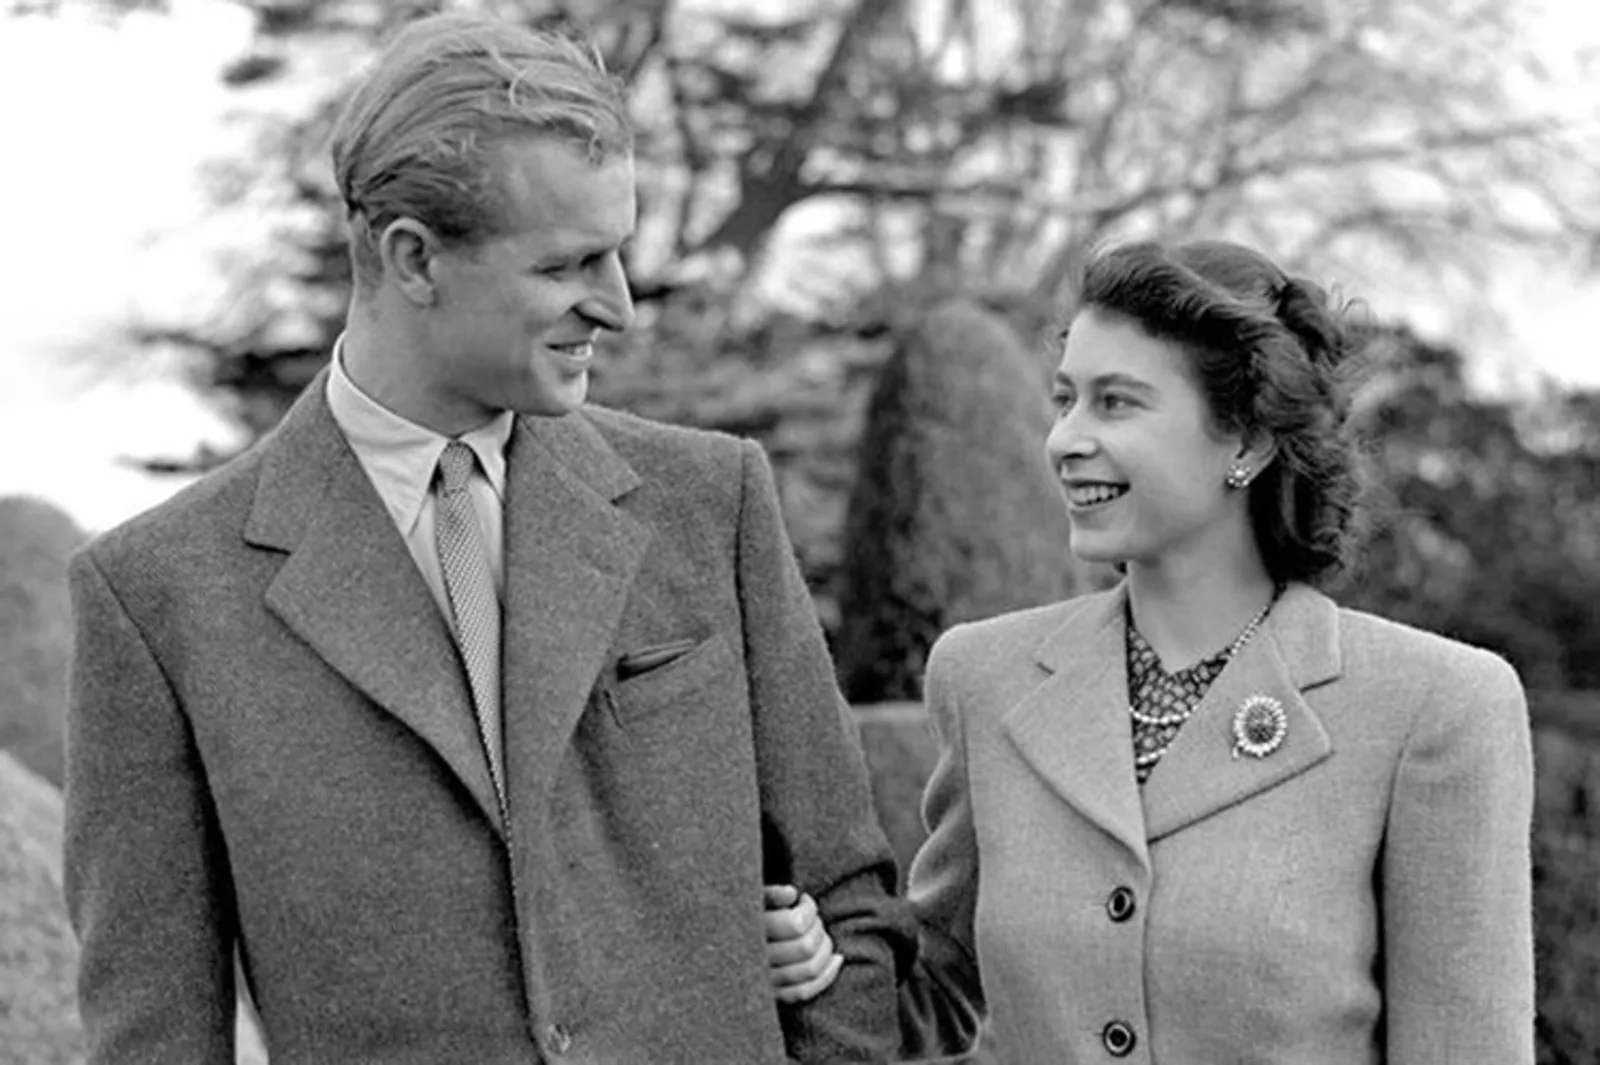 8 Fakta Mencengangkan di Balik Pernikahan Ratu Elizabeth, Sudah Tahu?